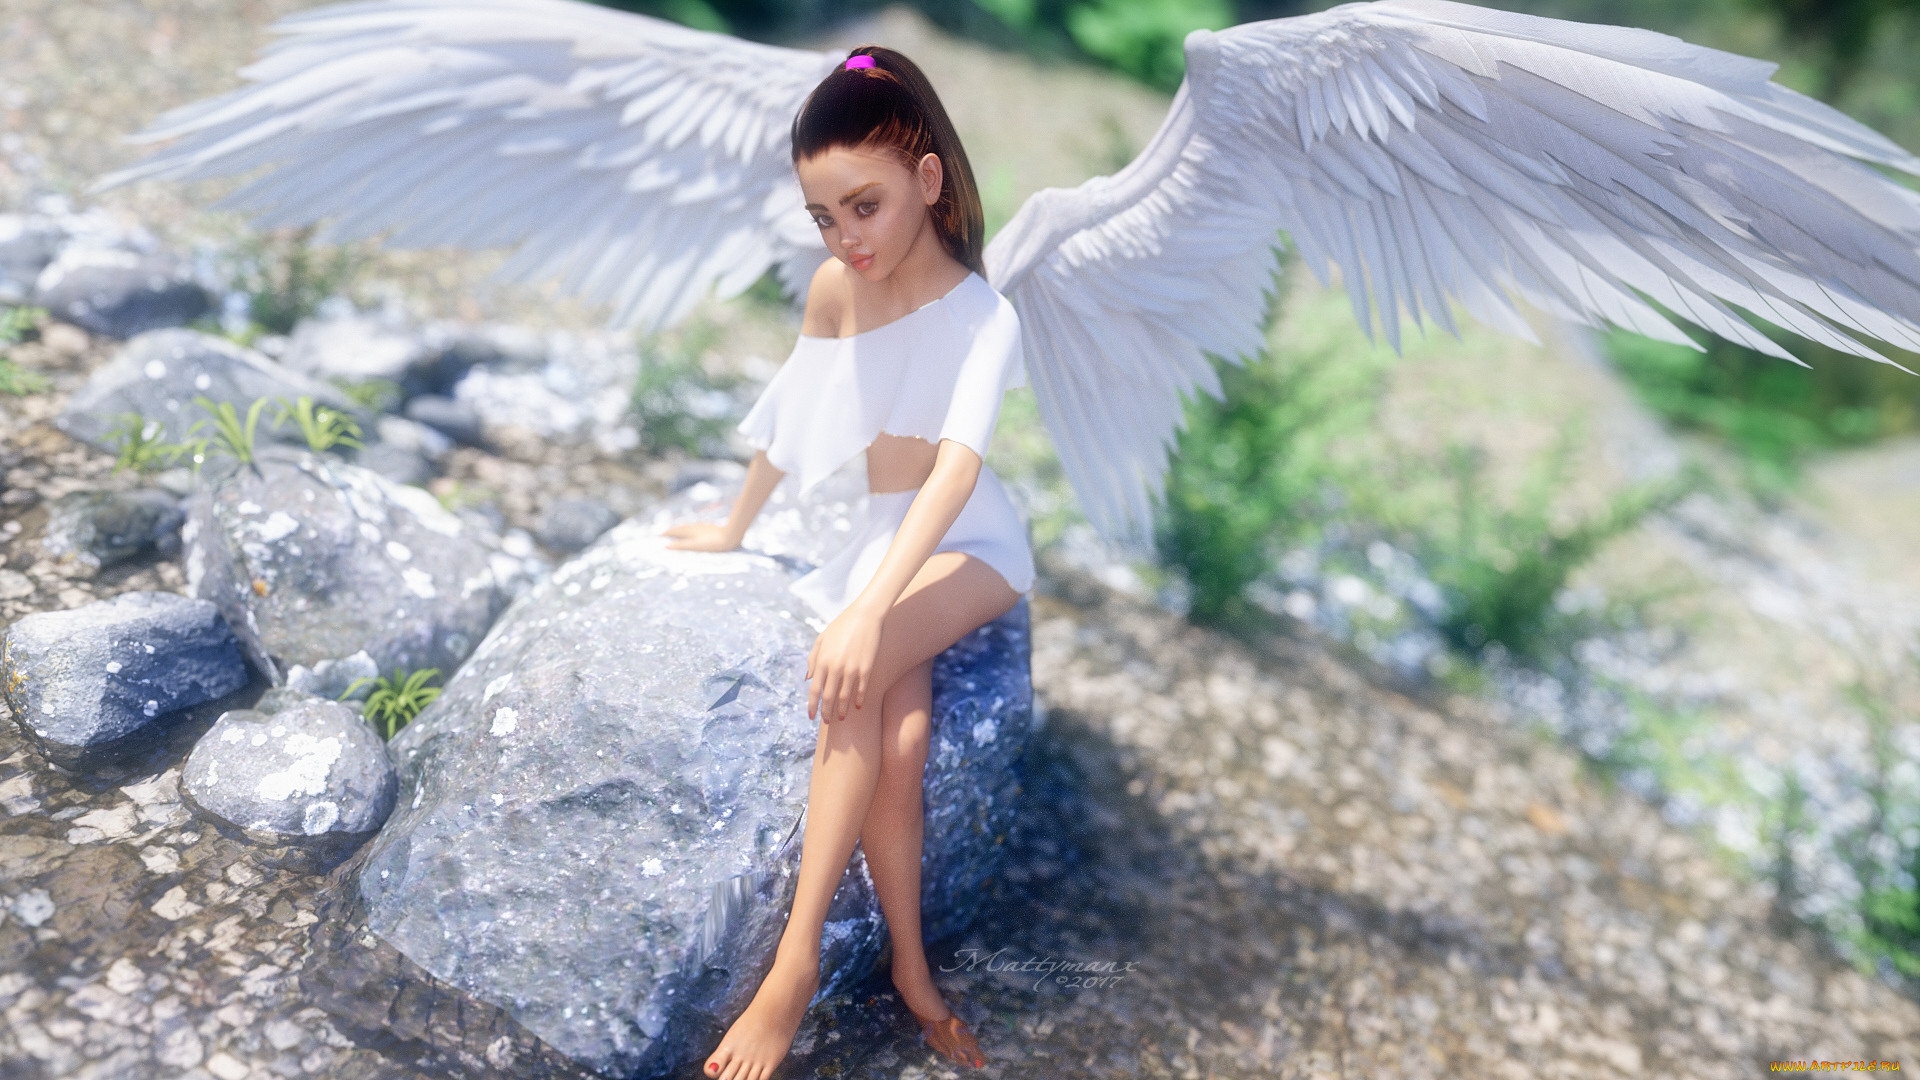 Angel included. Девушка - ангел. Красивый ангел. Прекрасный ангел девушка. Девушка с крыльями ангела.